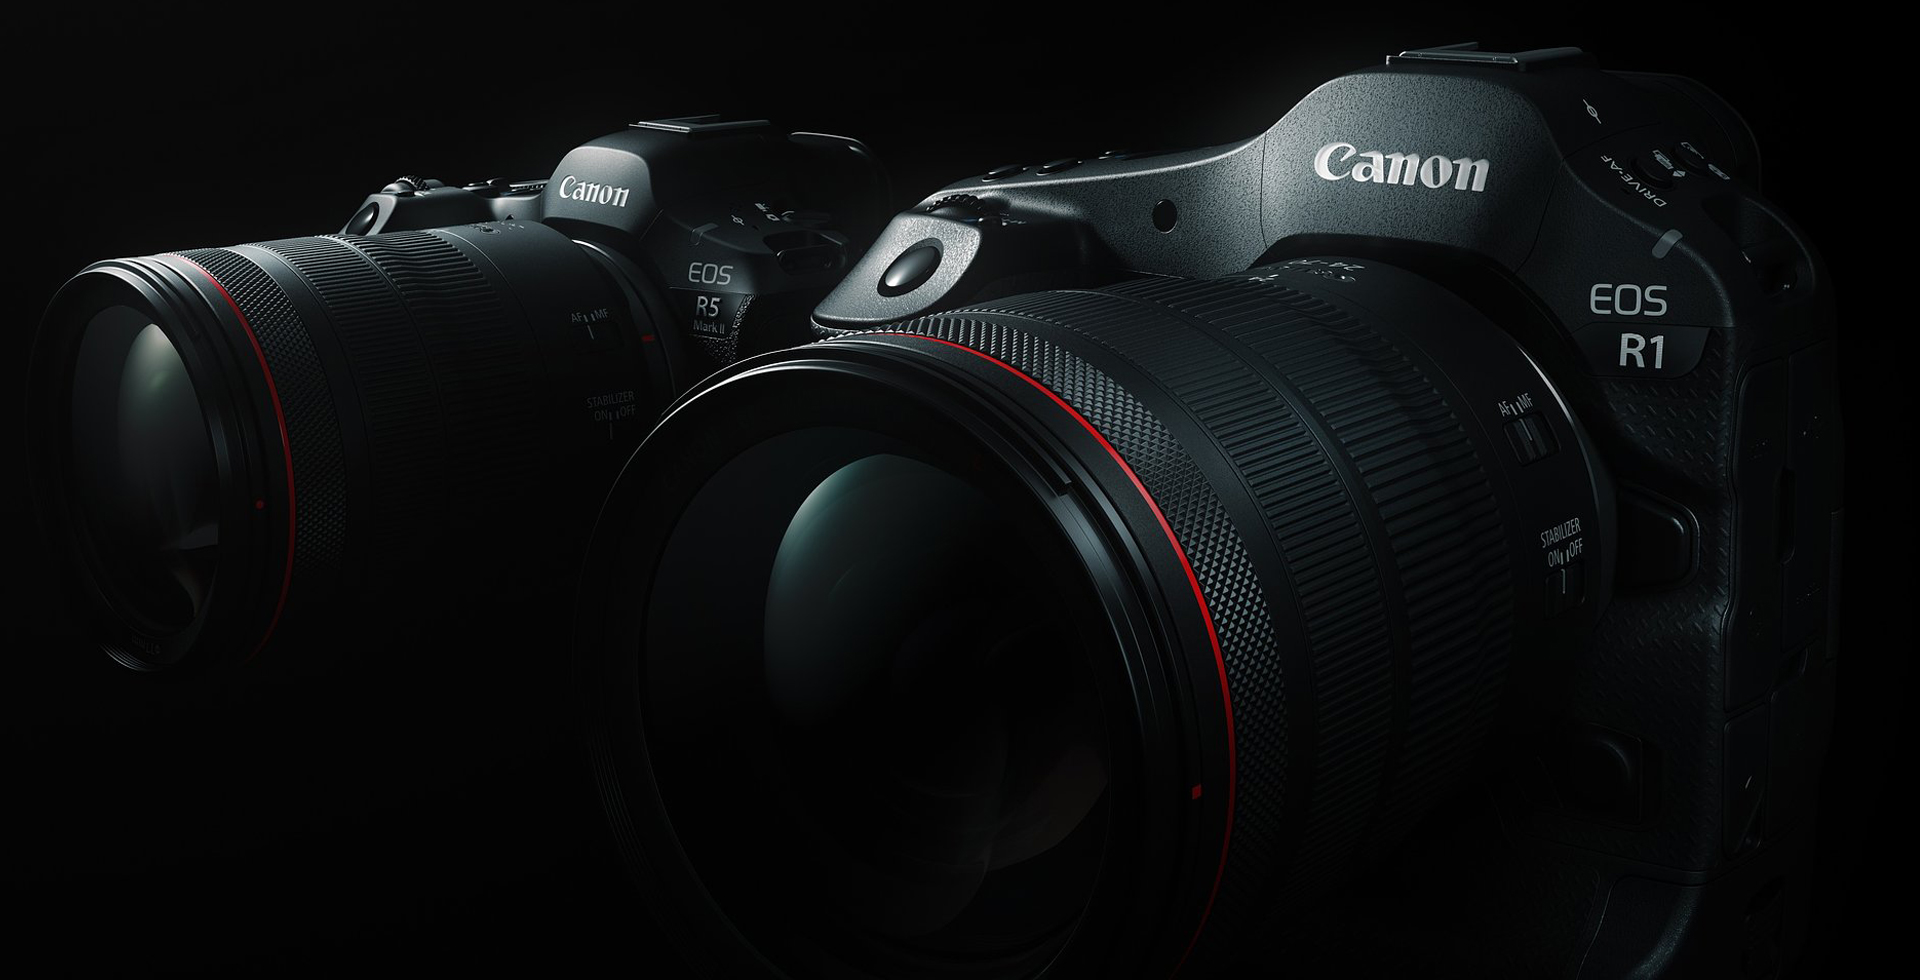 Canon wprowadza flagowy aparat EOS R1 i zaawansowany EOS R5 Mark II – bezlusterkowce wyznaczające nowe standardy jakości i kreatywności